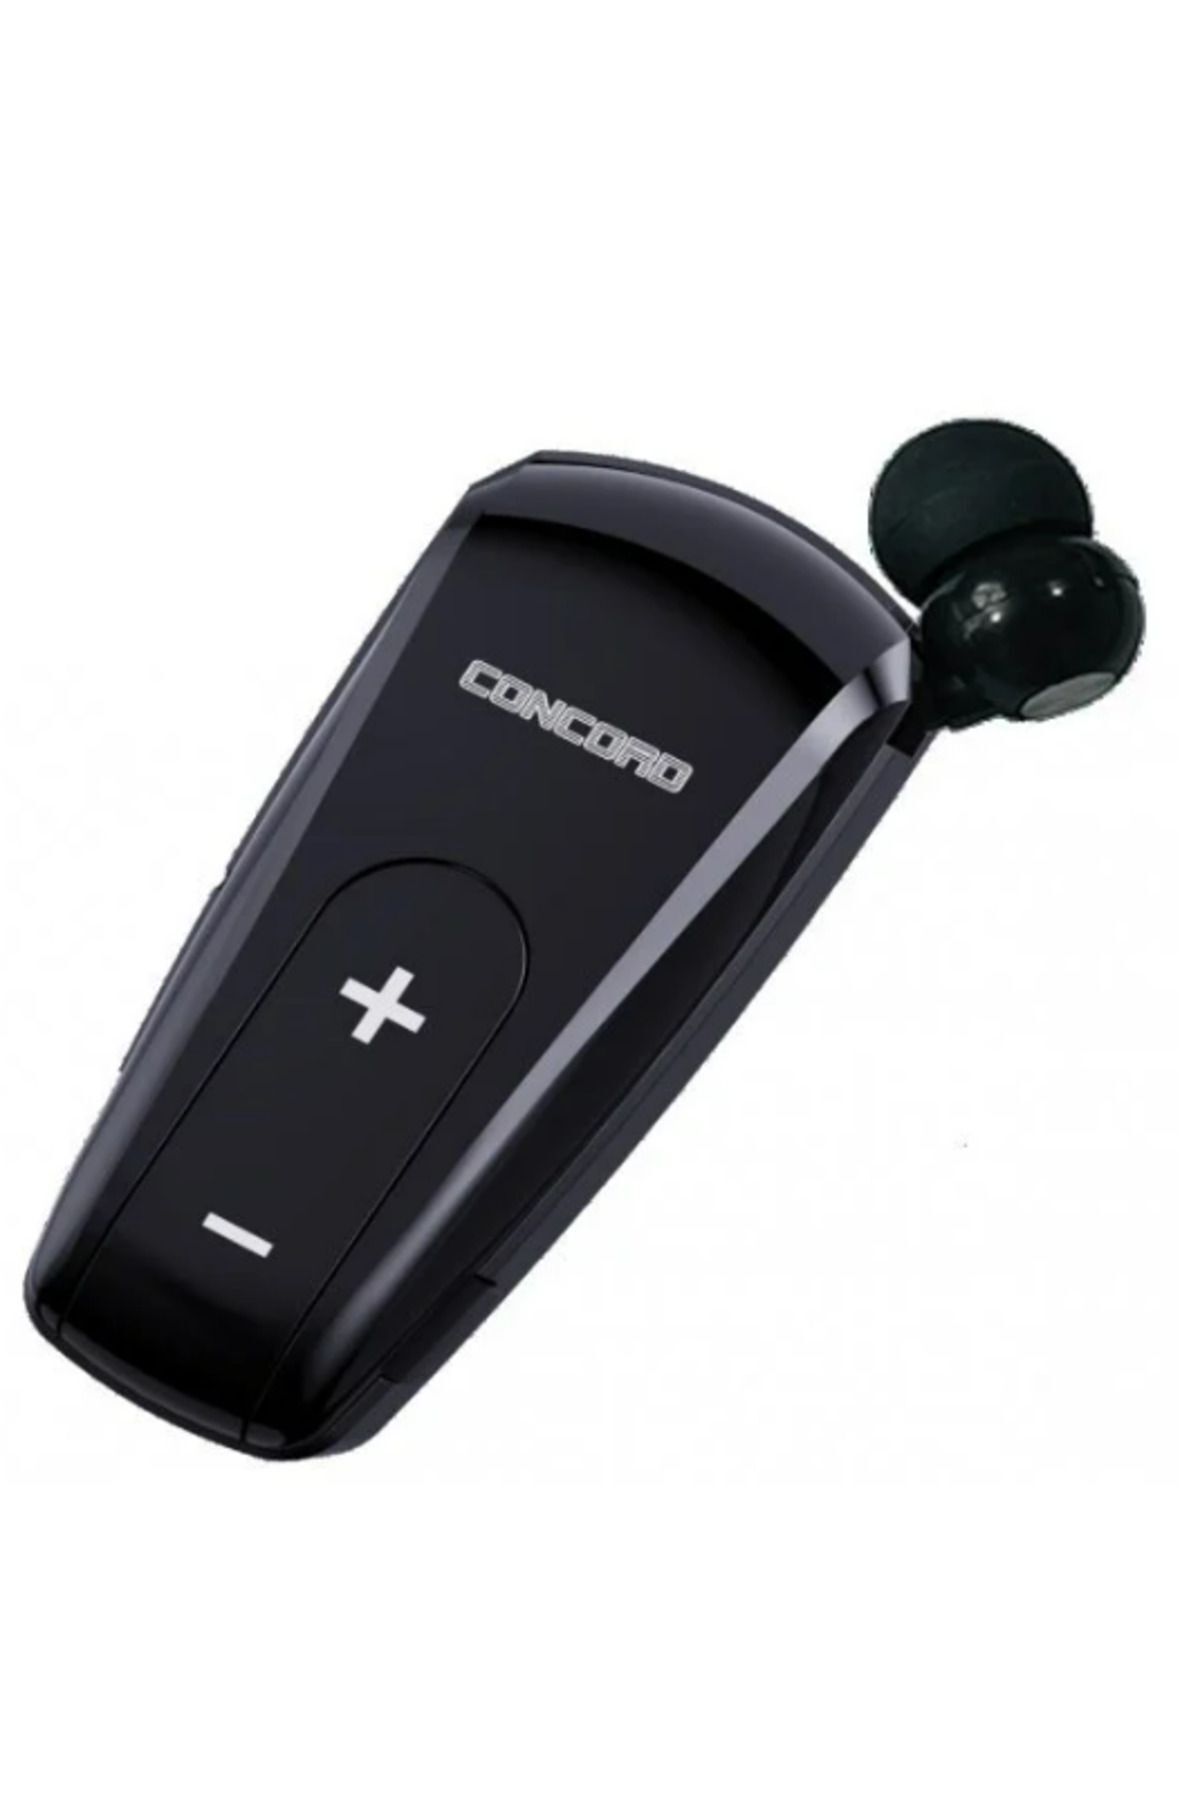 Concord C-984 Makaralı Bluetooth Kulaklık Titreşimli Iki Telefona Aynı Anda Bağlantı